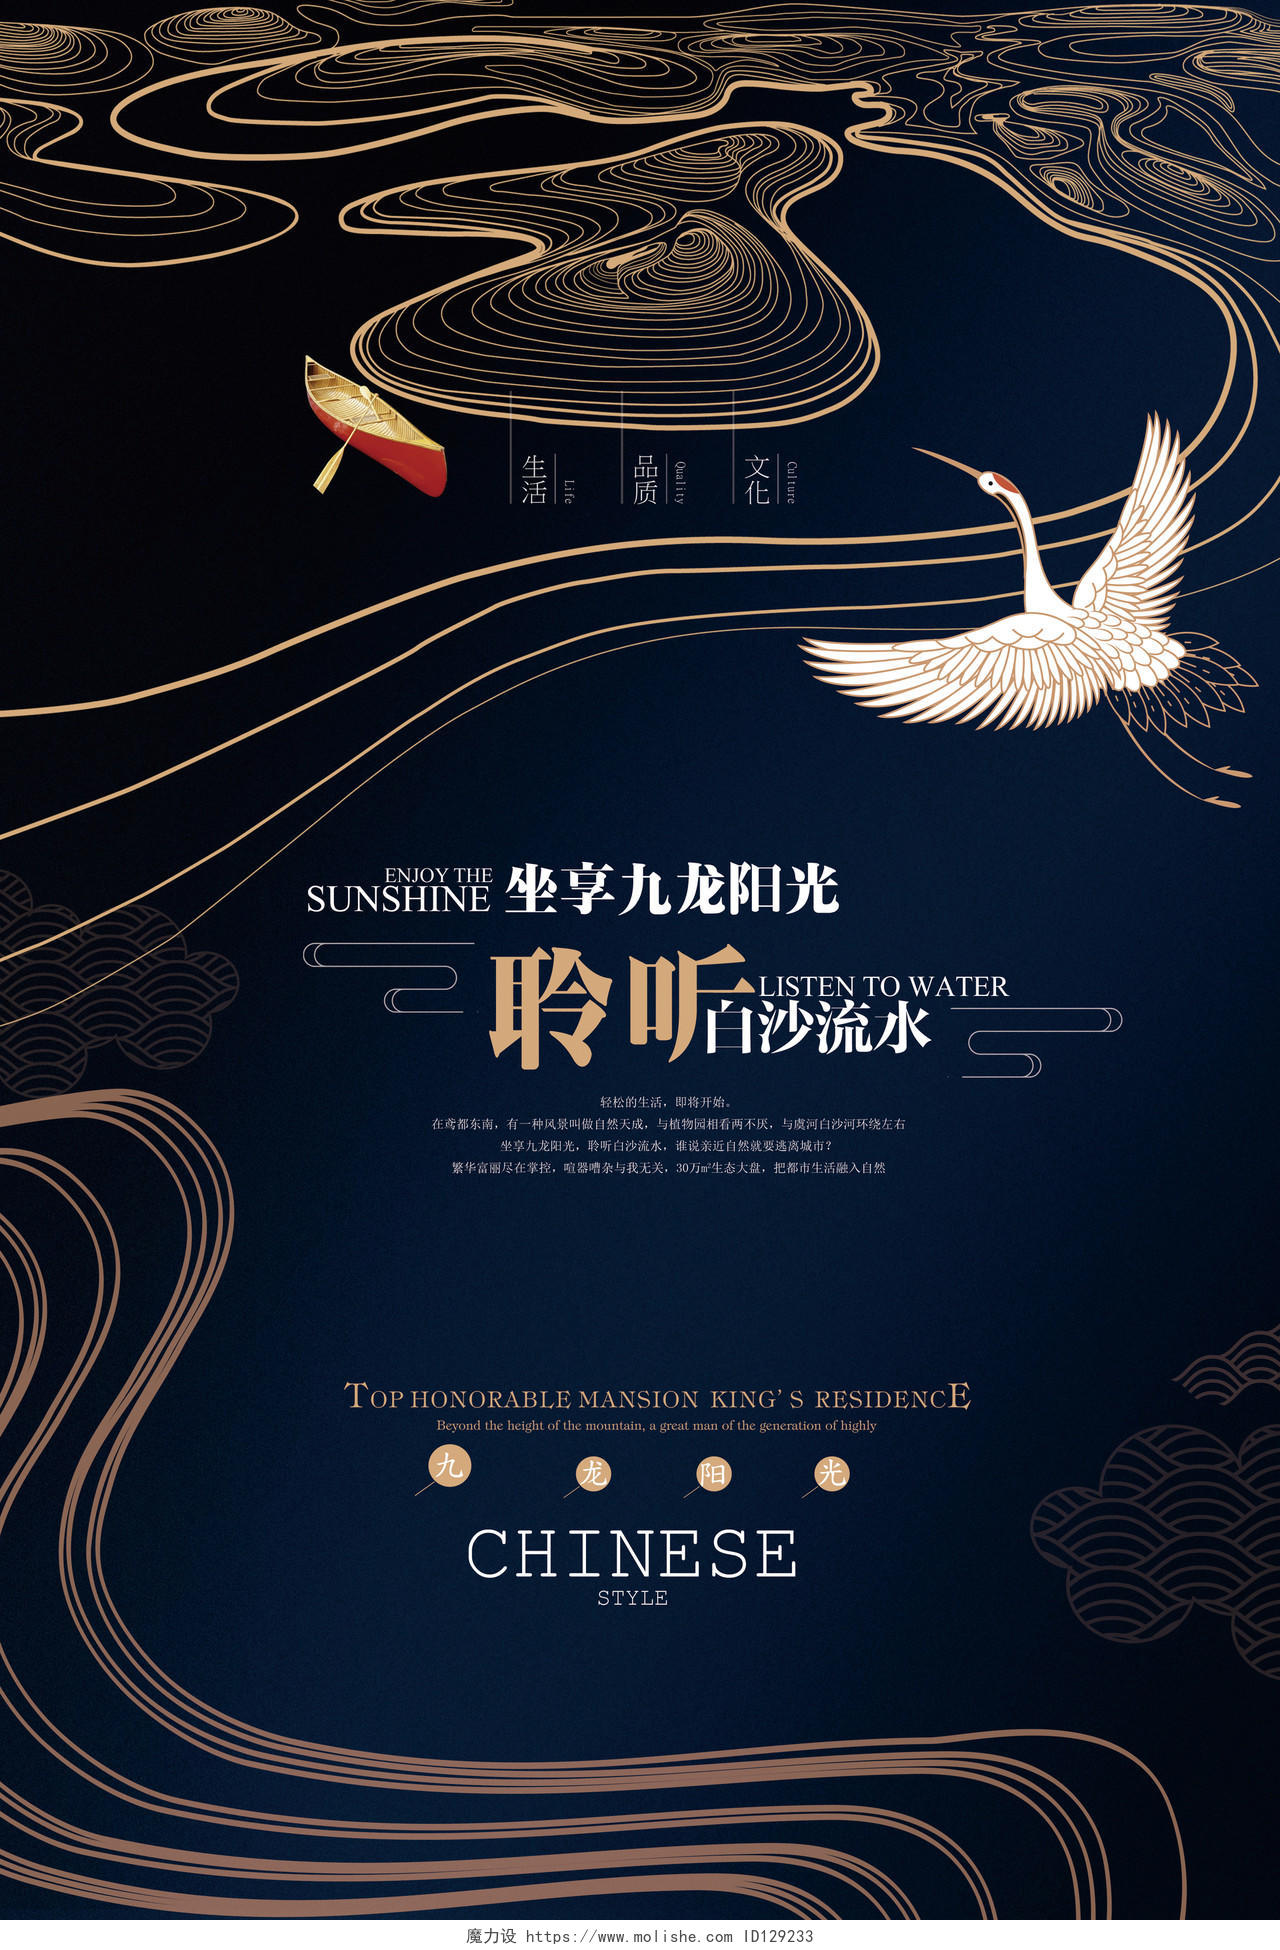 黑色高端中国风房地产宣传海报